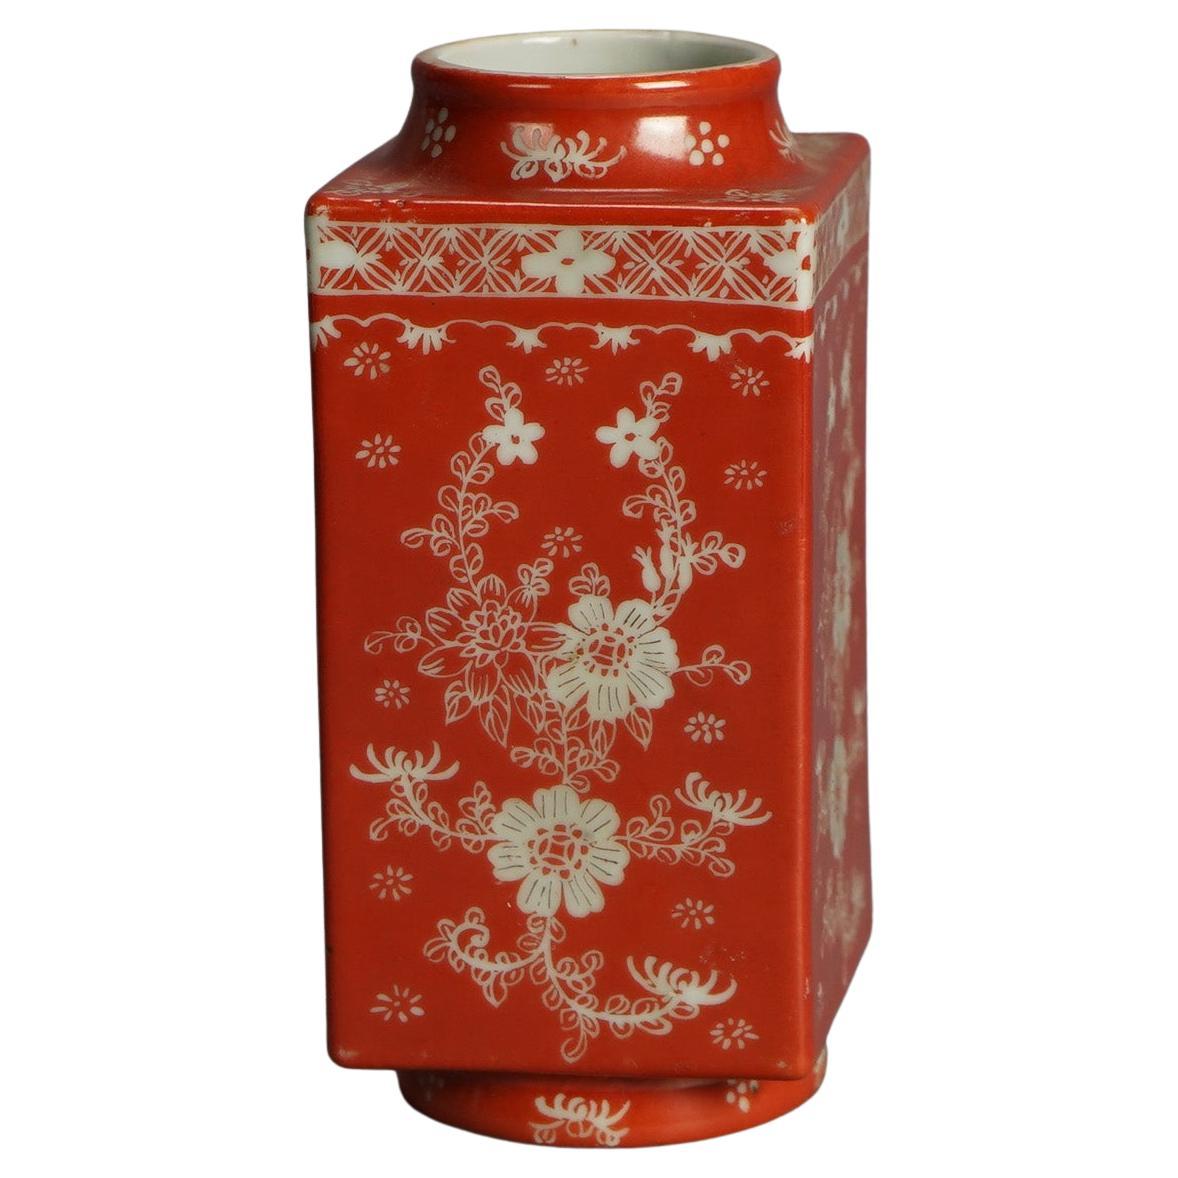 Antique Chinese Porcelain Vase, Orange with Floral Design C1920 For Sale